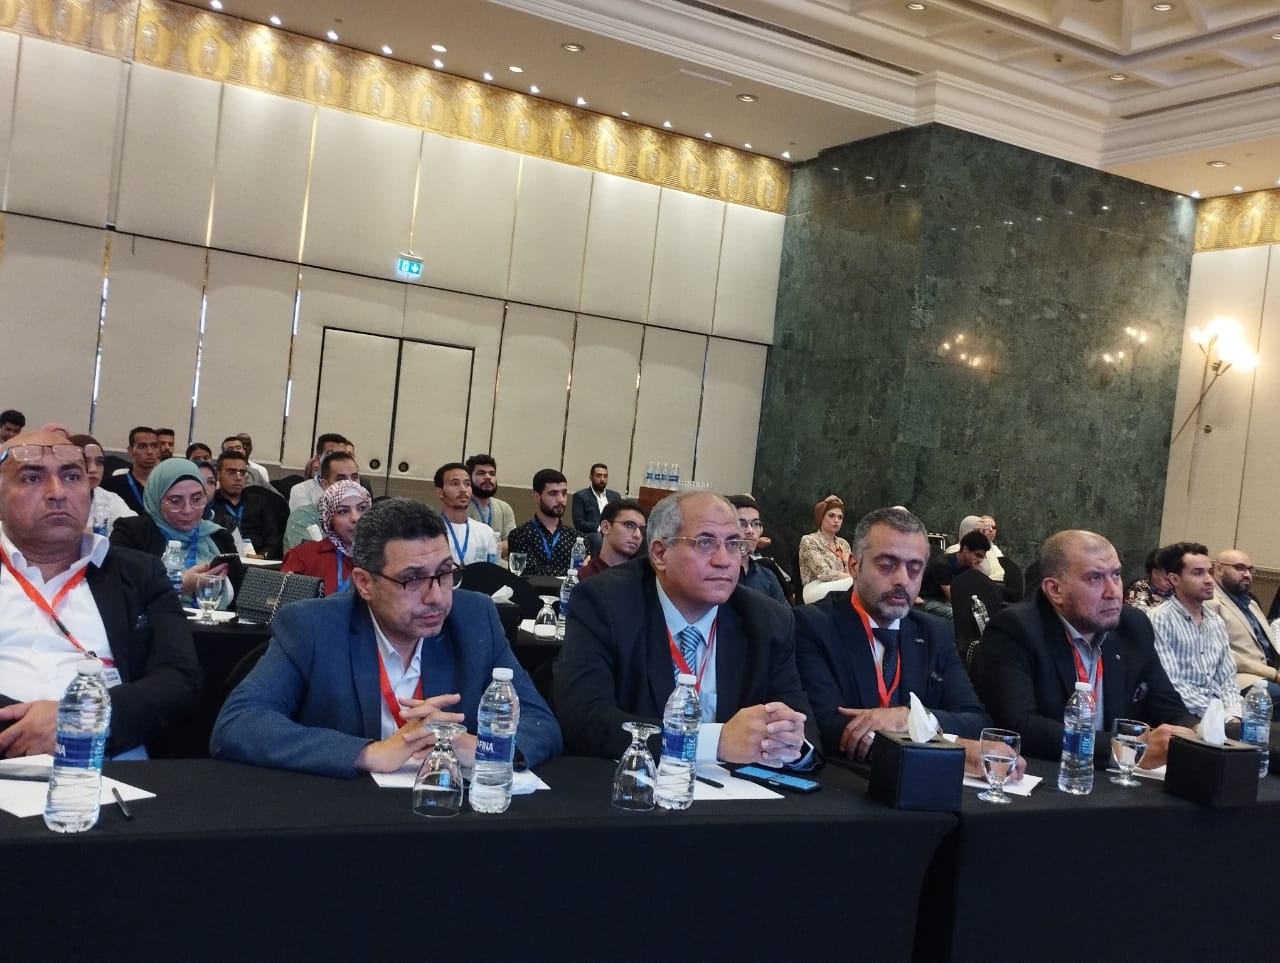 د احمد عبد الهادى رئيس المؤتمر وعدد من الحضور